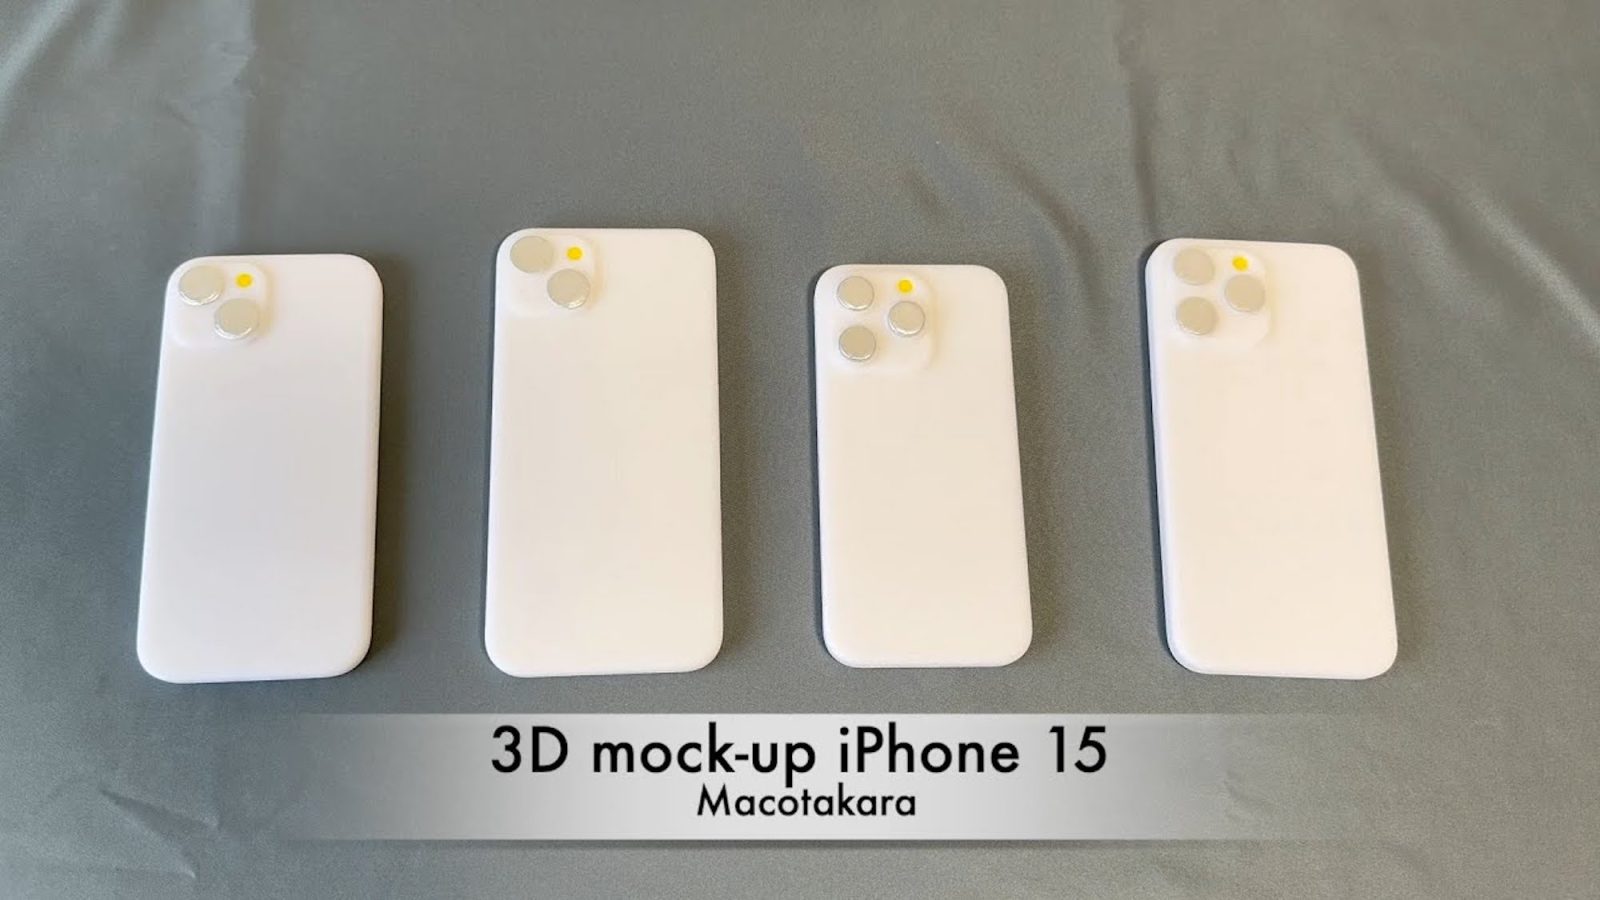 El video muestra módulos ficticios del iPhone 15 impresos en 3D y prueba la compatibilidad con las fundas del iPhone 14